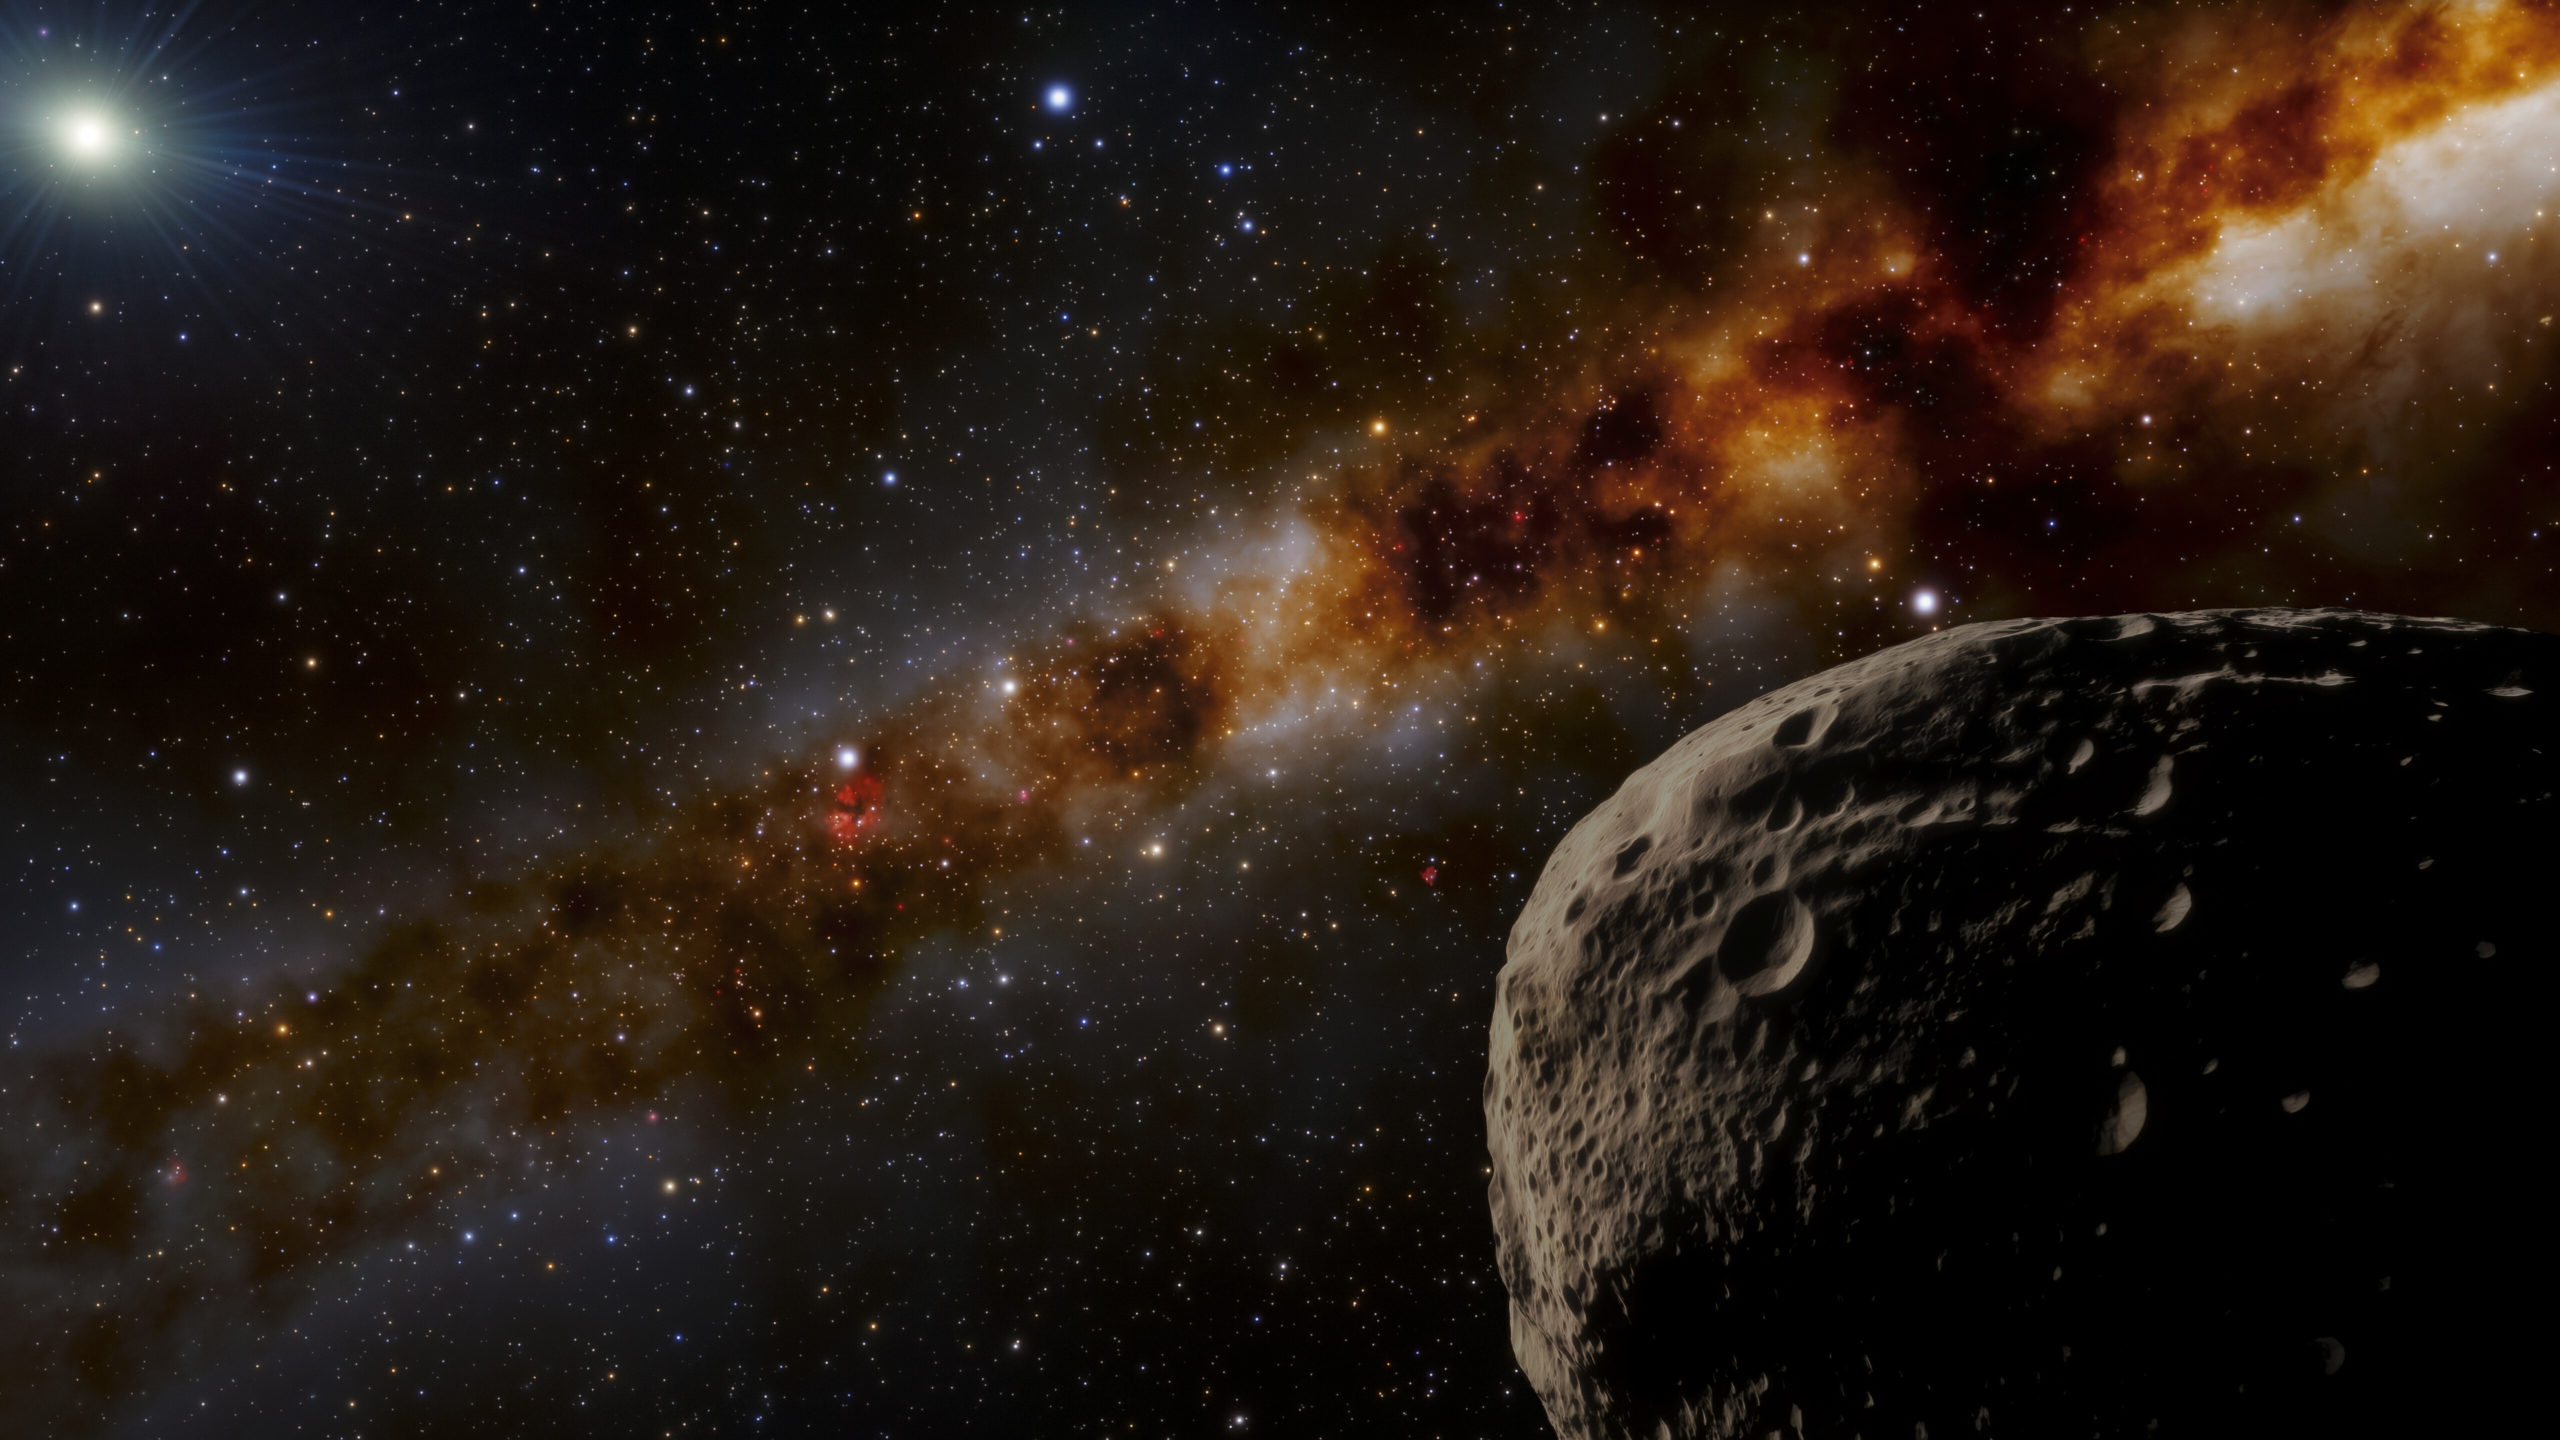 Αστρονομία: Το Farfarout είναι σήμερα το πιο μακρινό γνωστό σώμα στο ηλιακό μας σύστημα, επιβεβαίωσαν οι αστρονόμοι